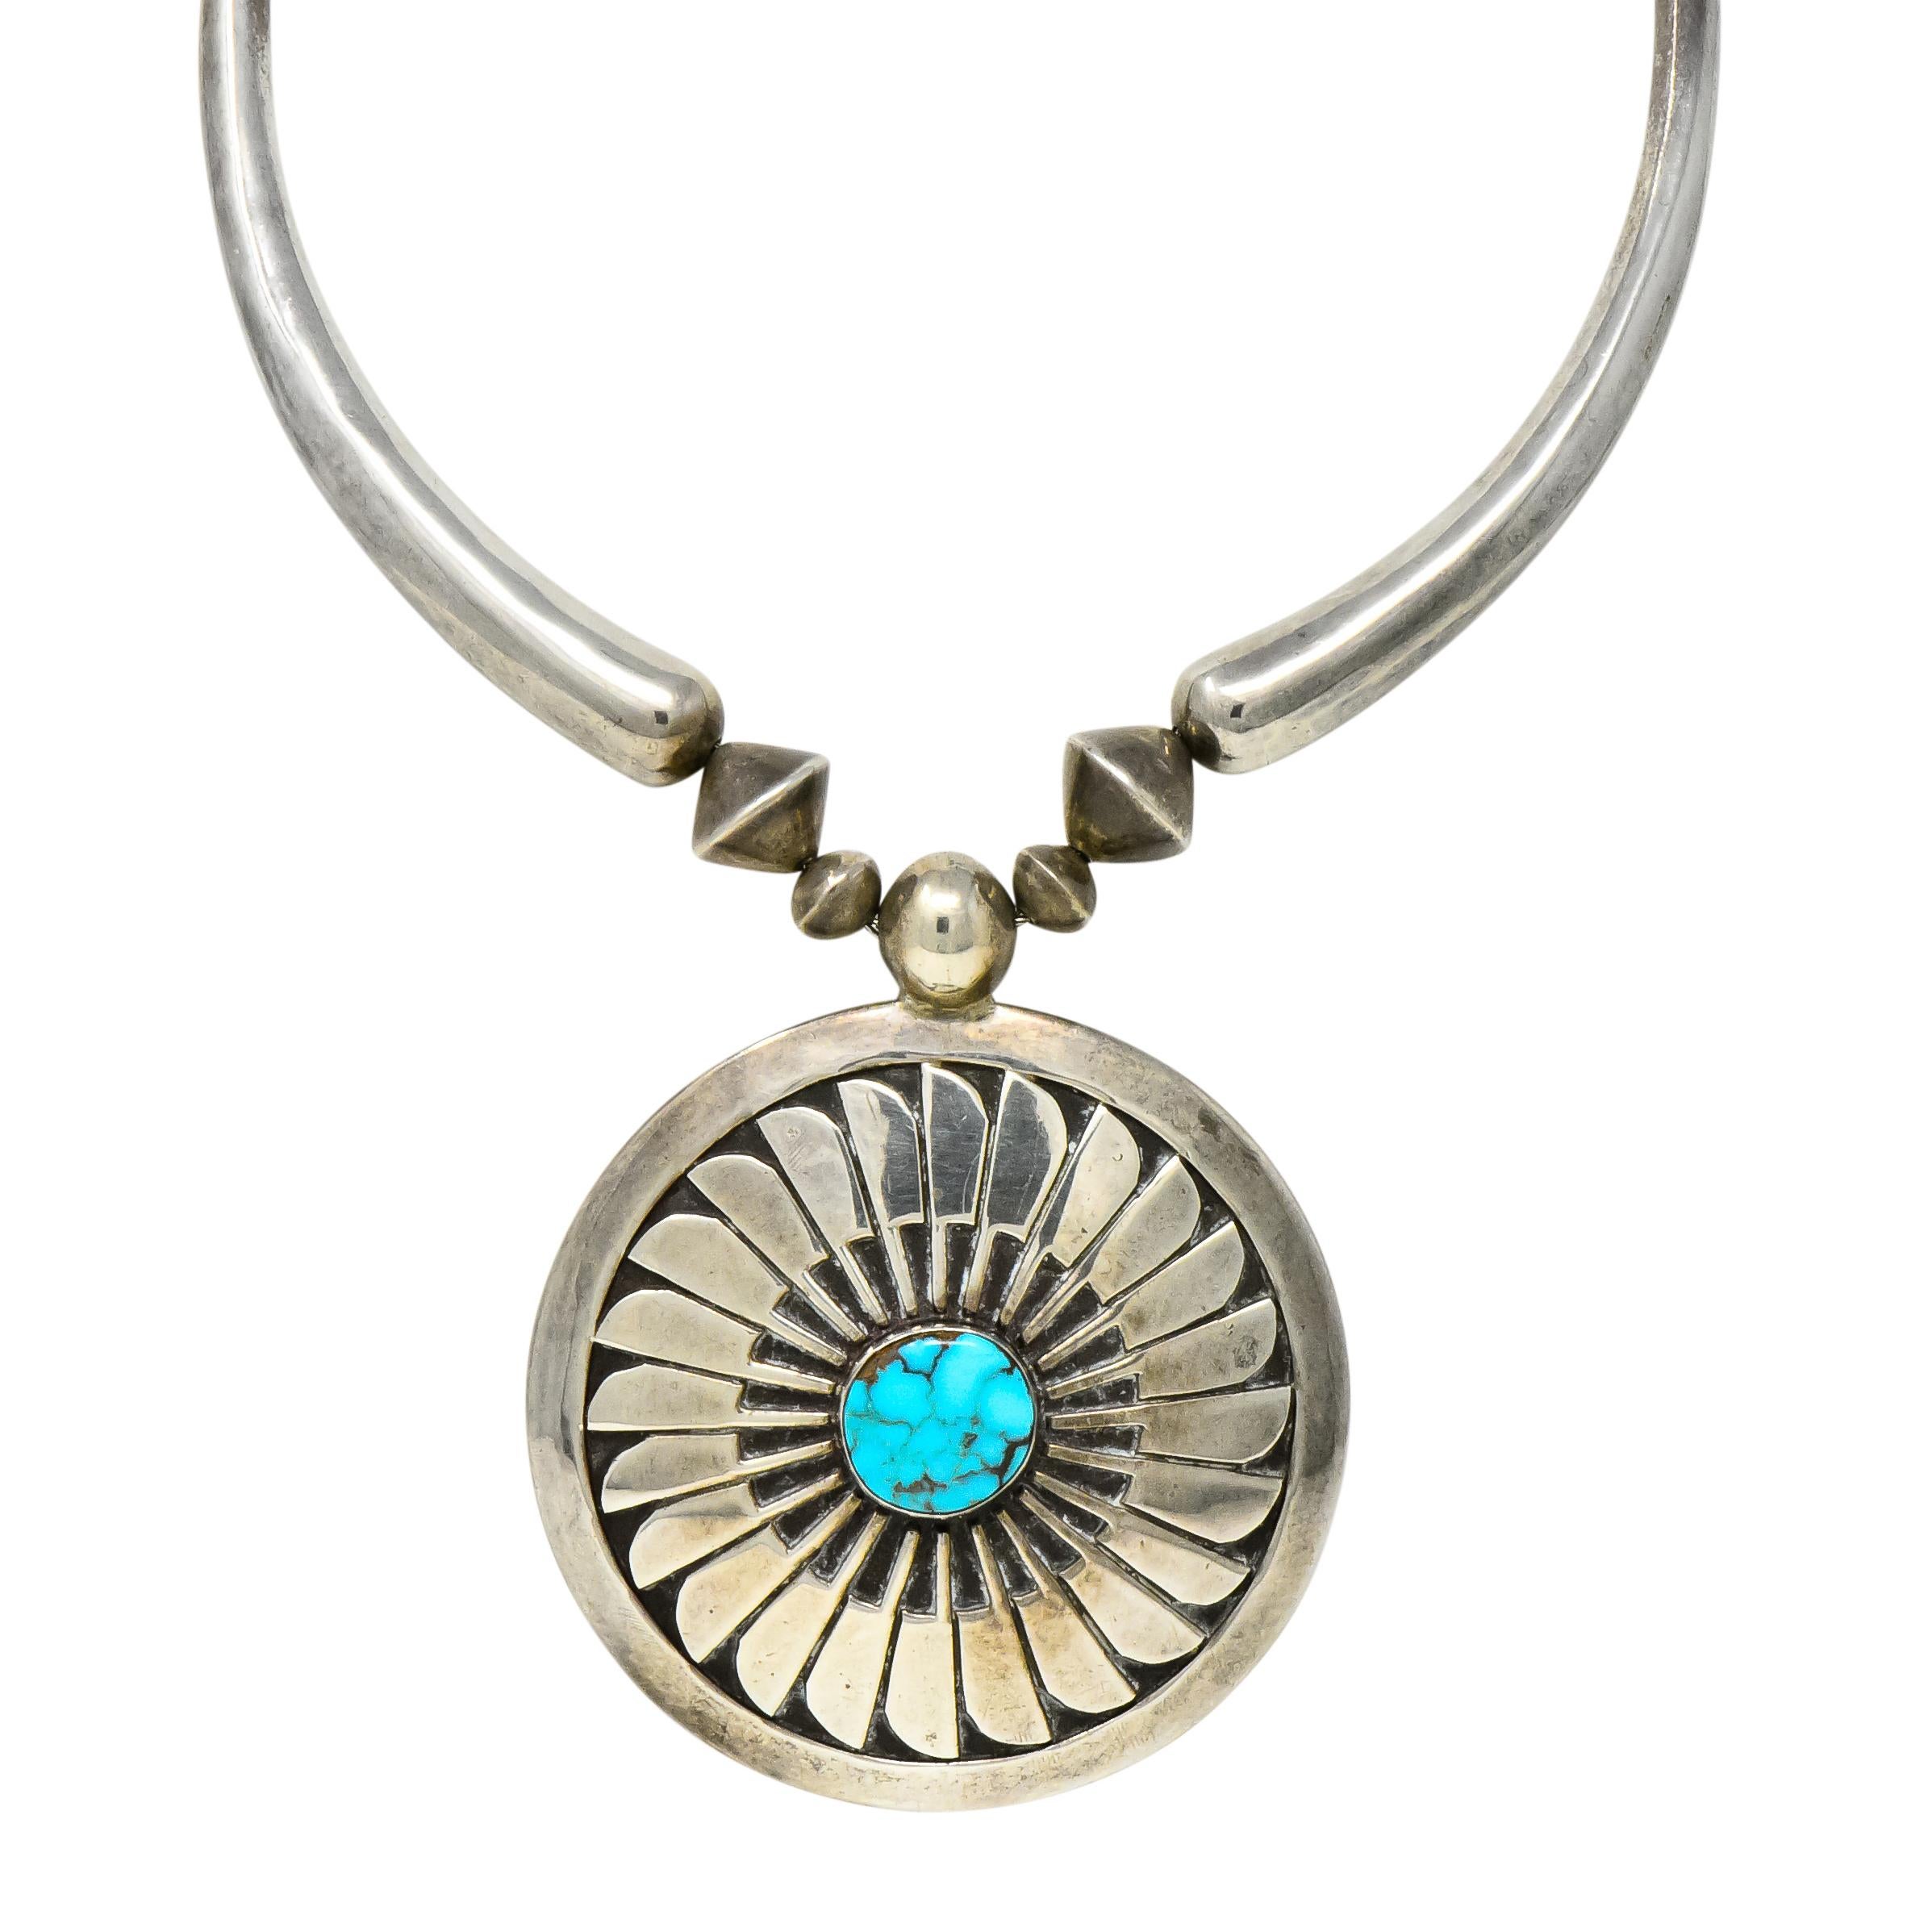 Fine Joseph H. Quintana JHQ Cochiti Pueblo Turquoise Sterling Silver Necklace 2